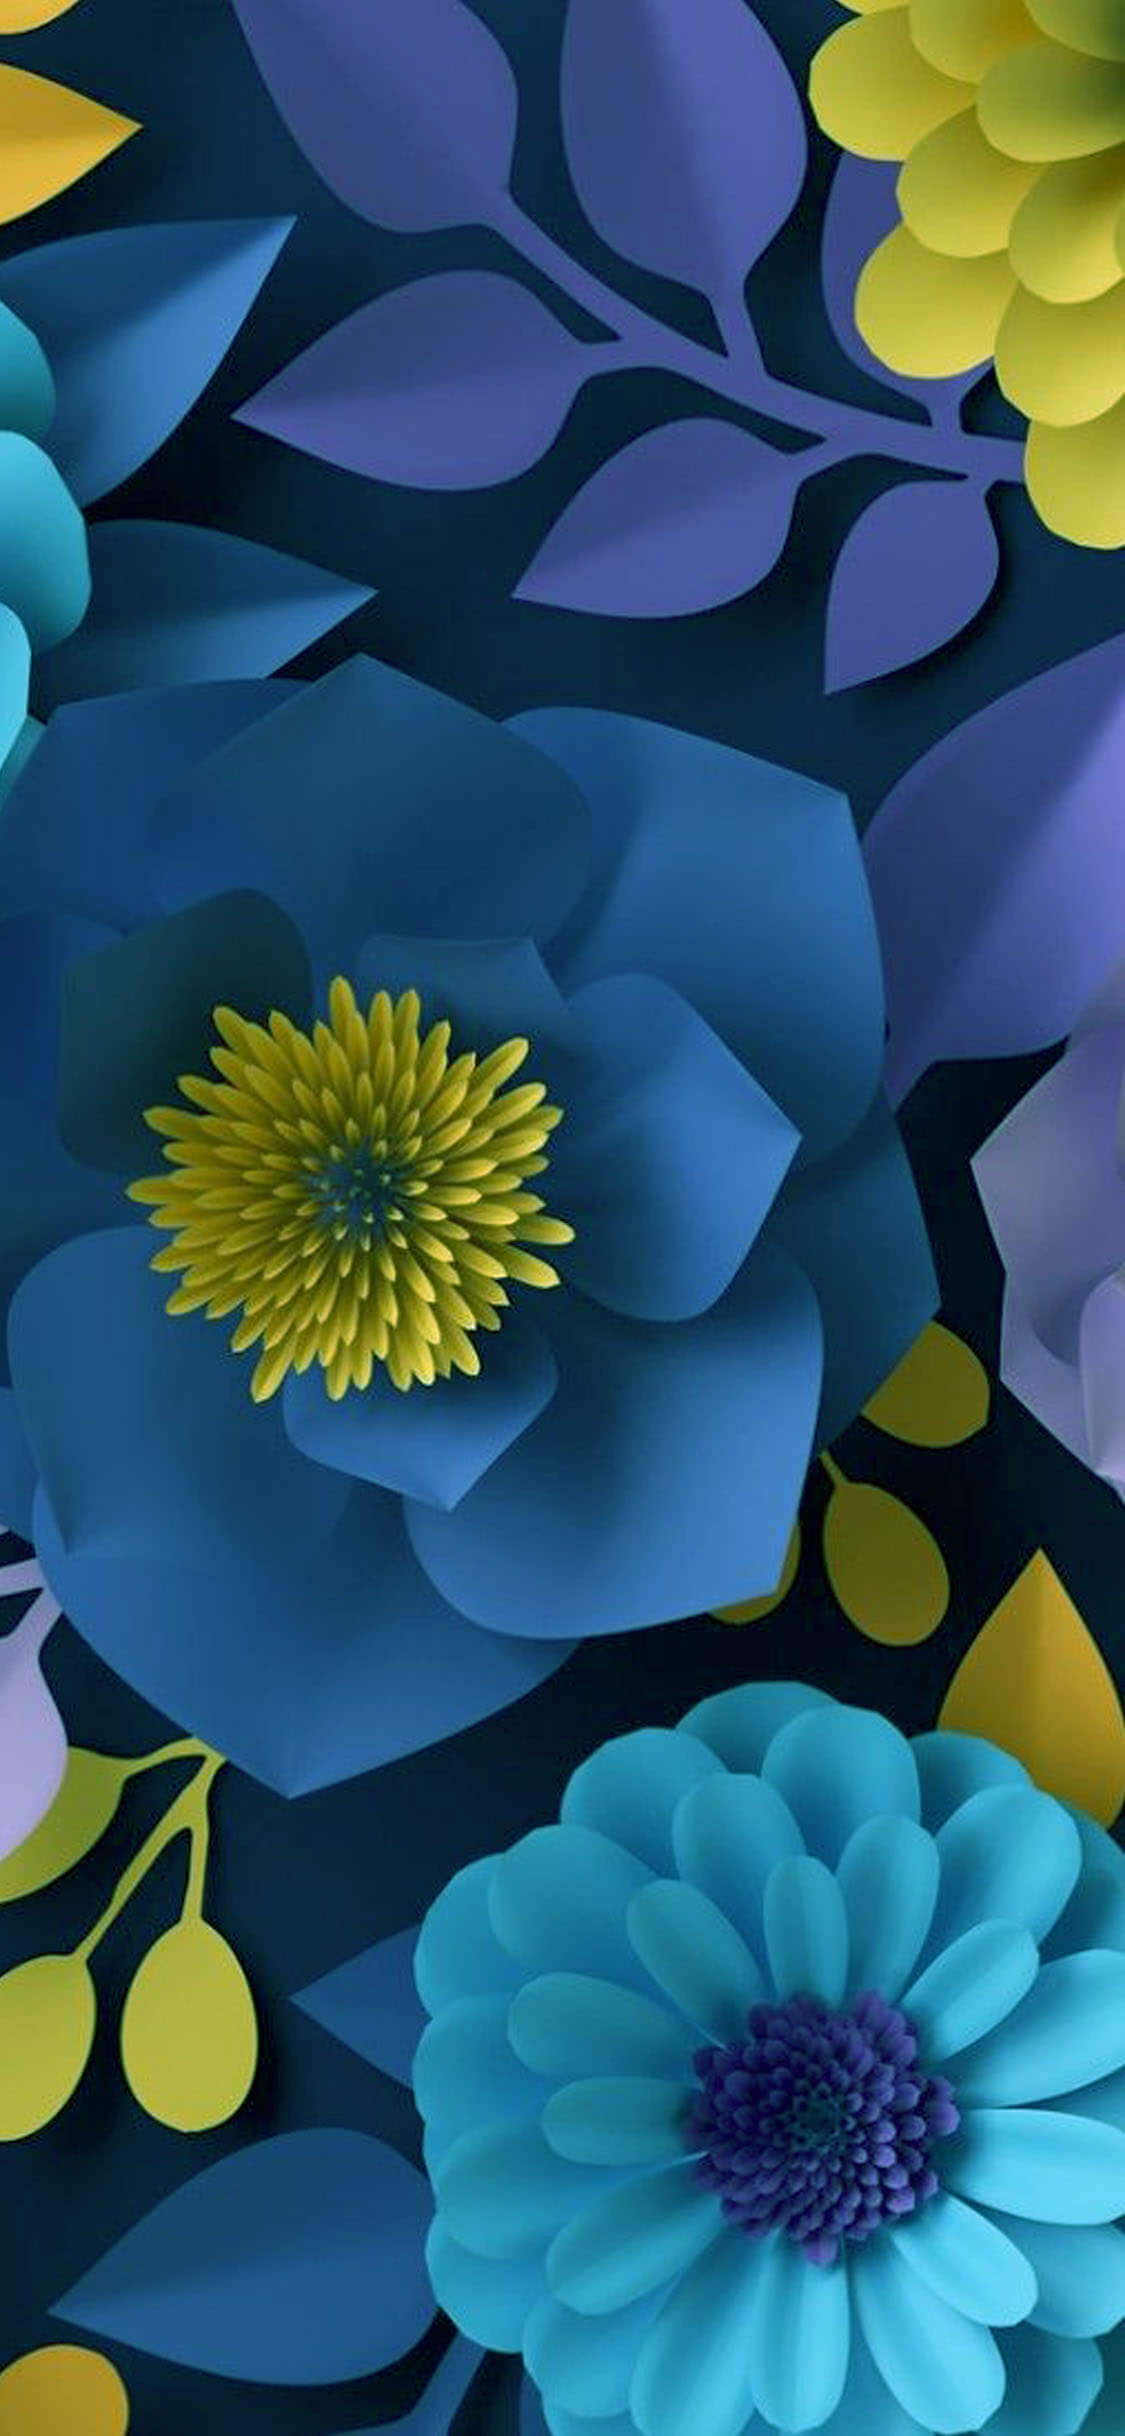 Flower Wall Wallpaper Iphone - ️ ༻⚜༺ iPhone Wallpaper ༻⚜༺ ️ ༻⚜༺ | Vintage flowers : We've